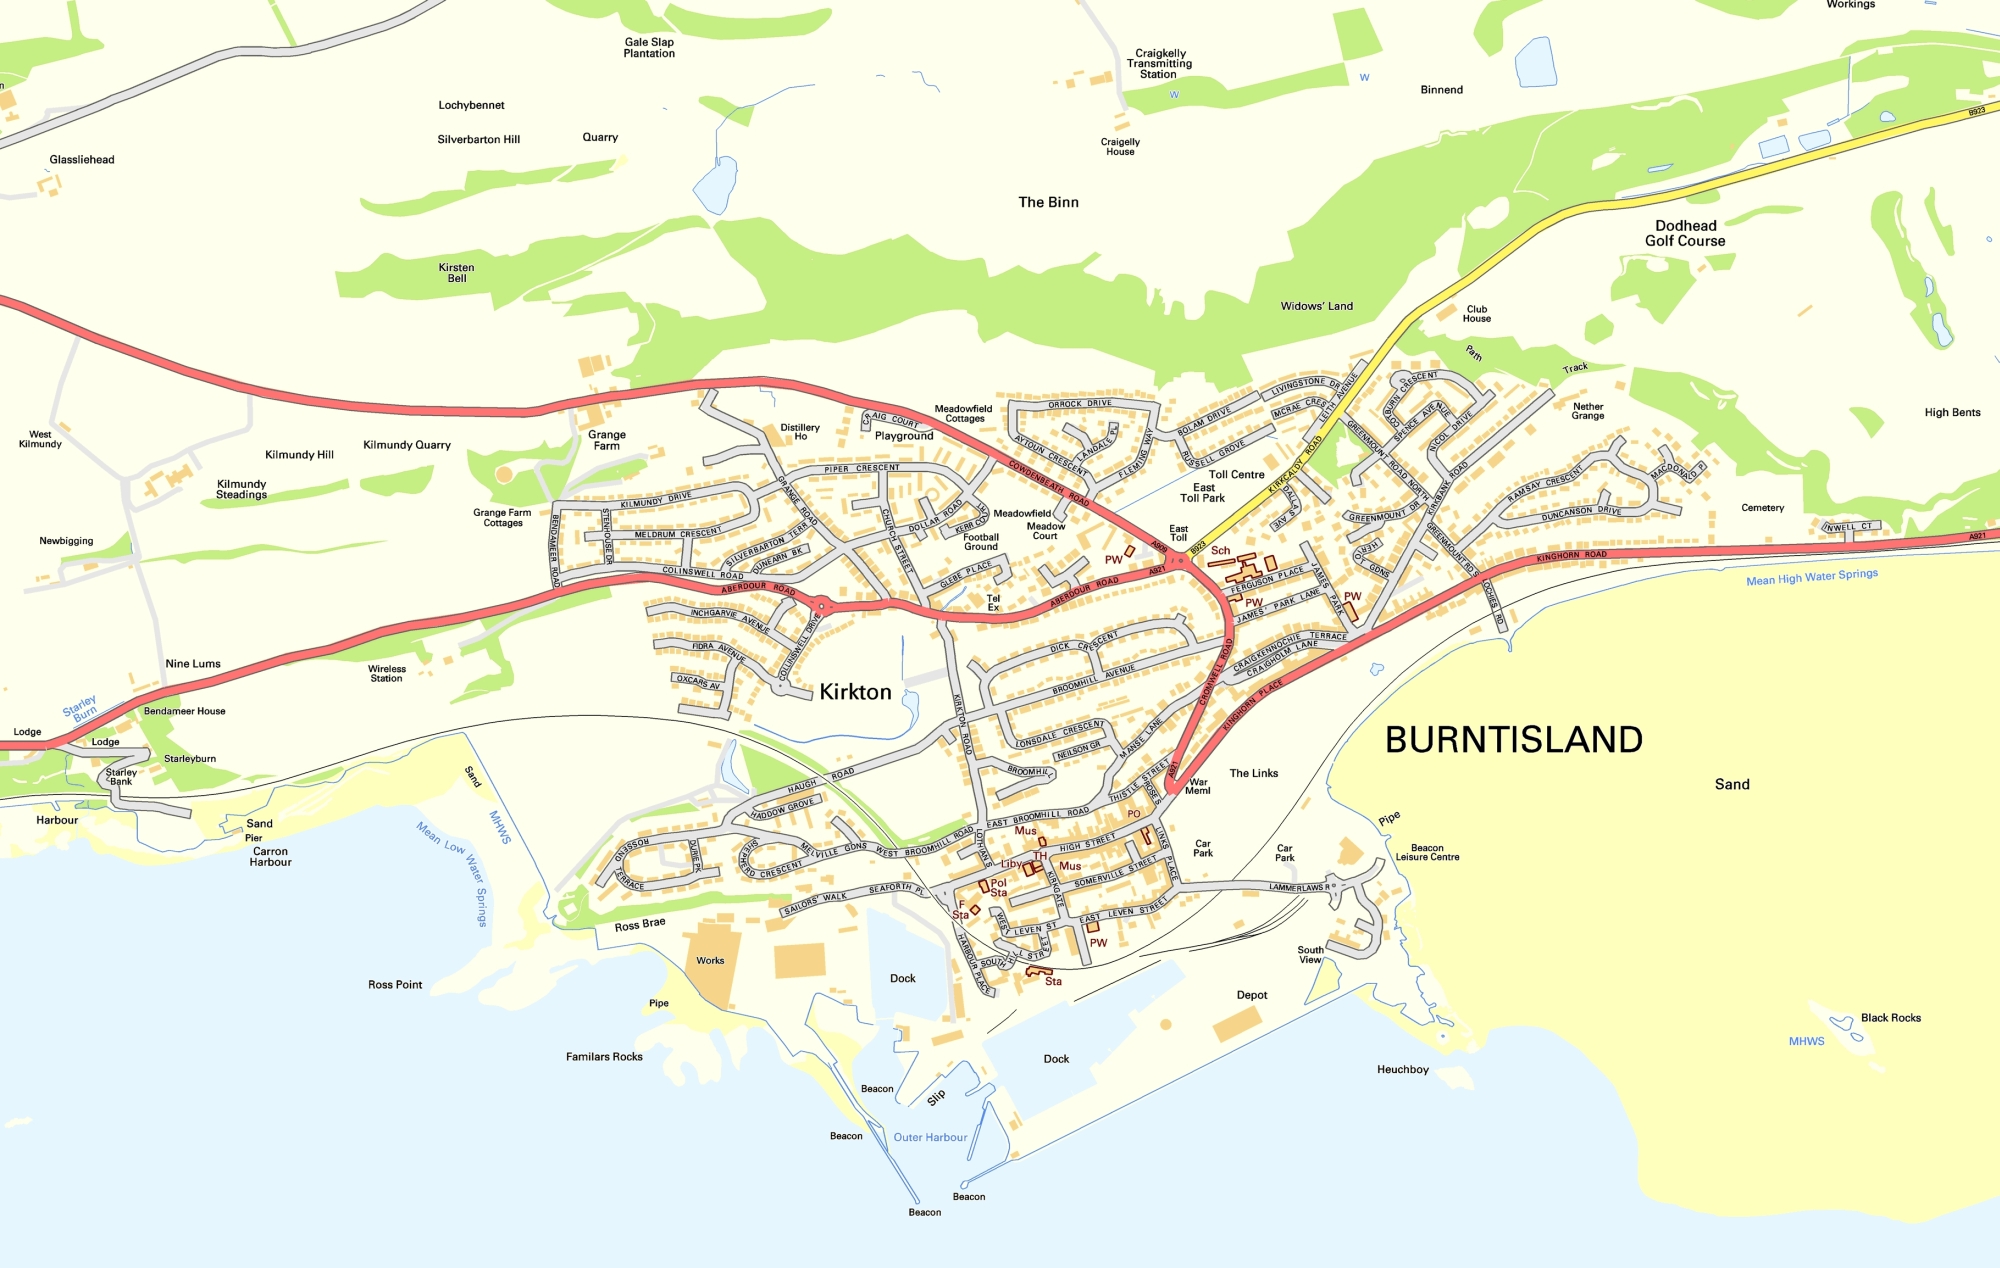 Burntisland area (large scale)